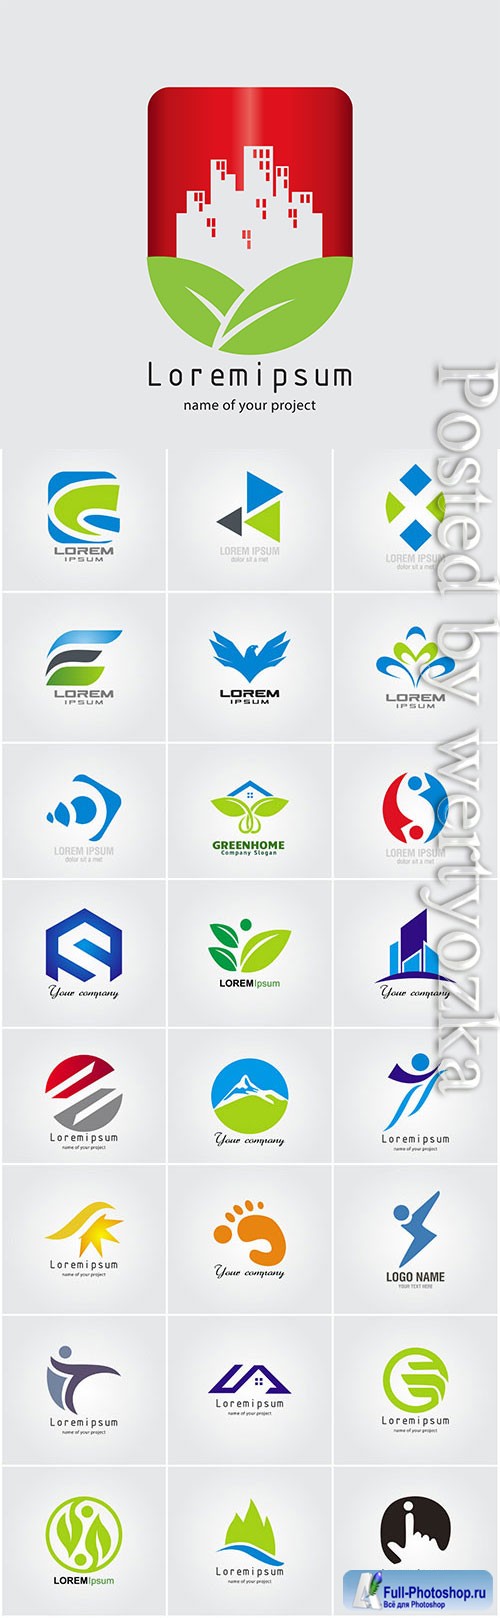 Logos set in vector